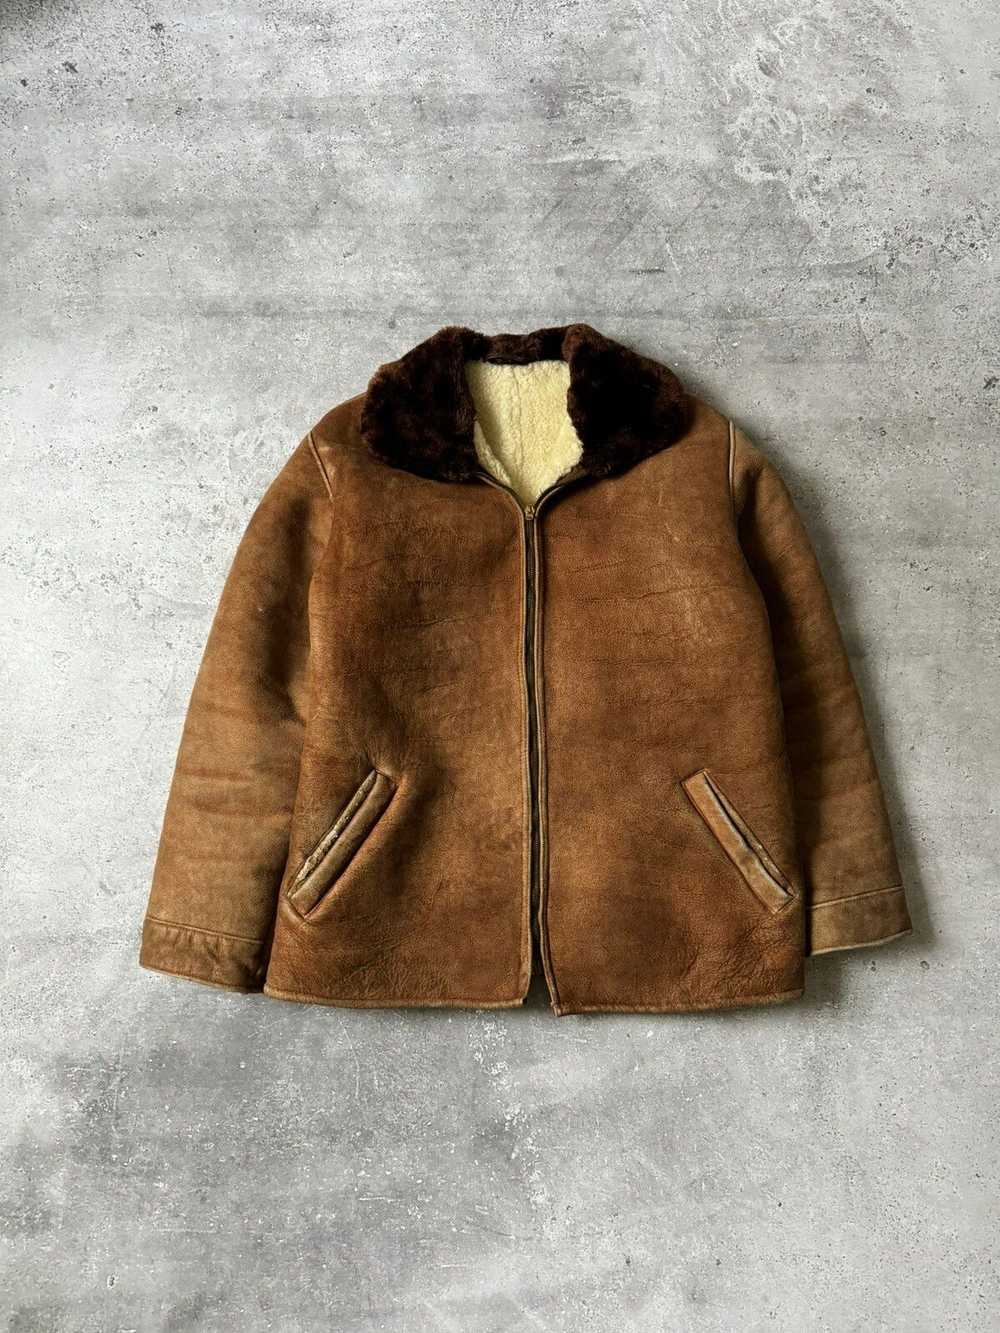 Antique × Sheepskin Coat × Vintage 1950s German S… - image 2